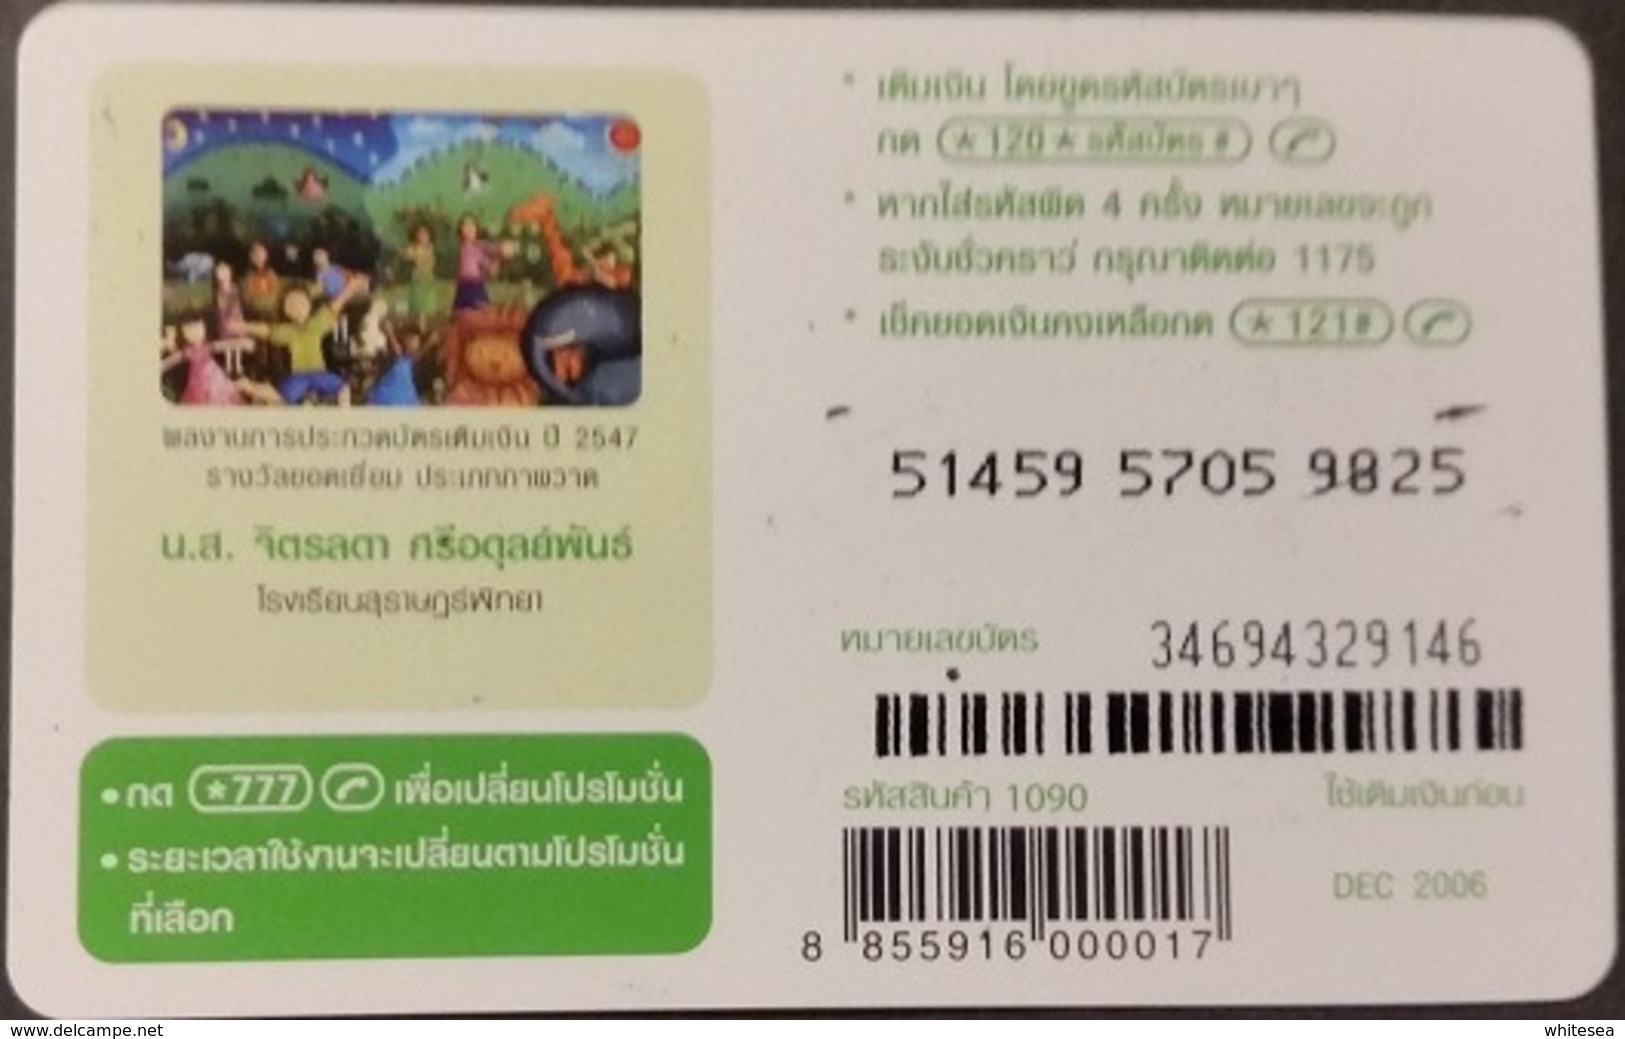 Mobilecard Thailand - 12Call - Zeichnung - Elefant - Giraffe - Löwe - Thailand